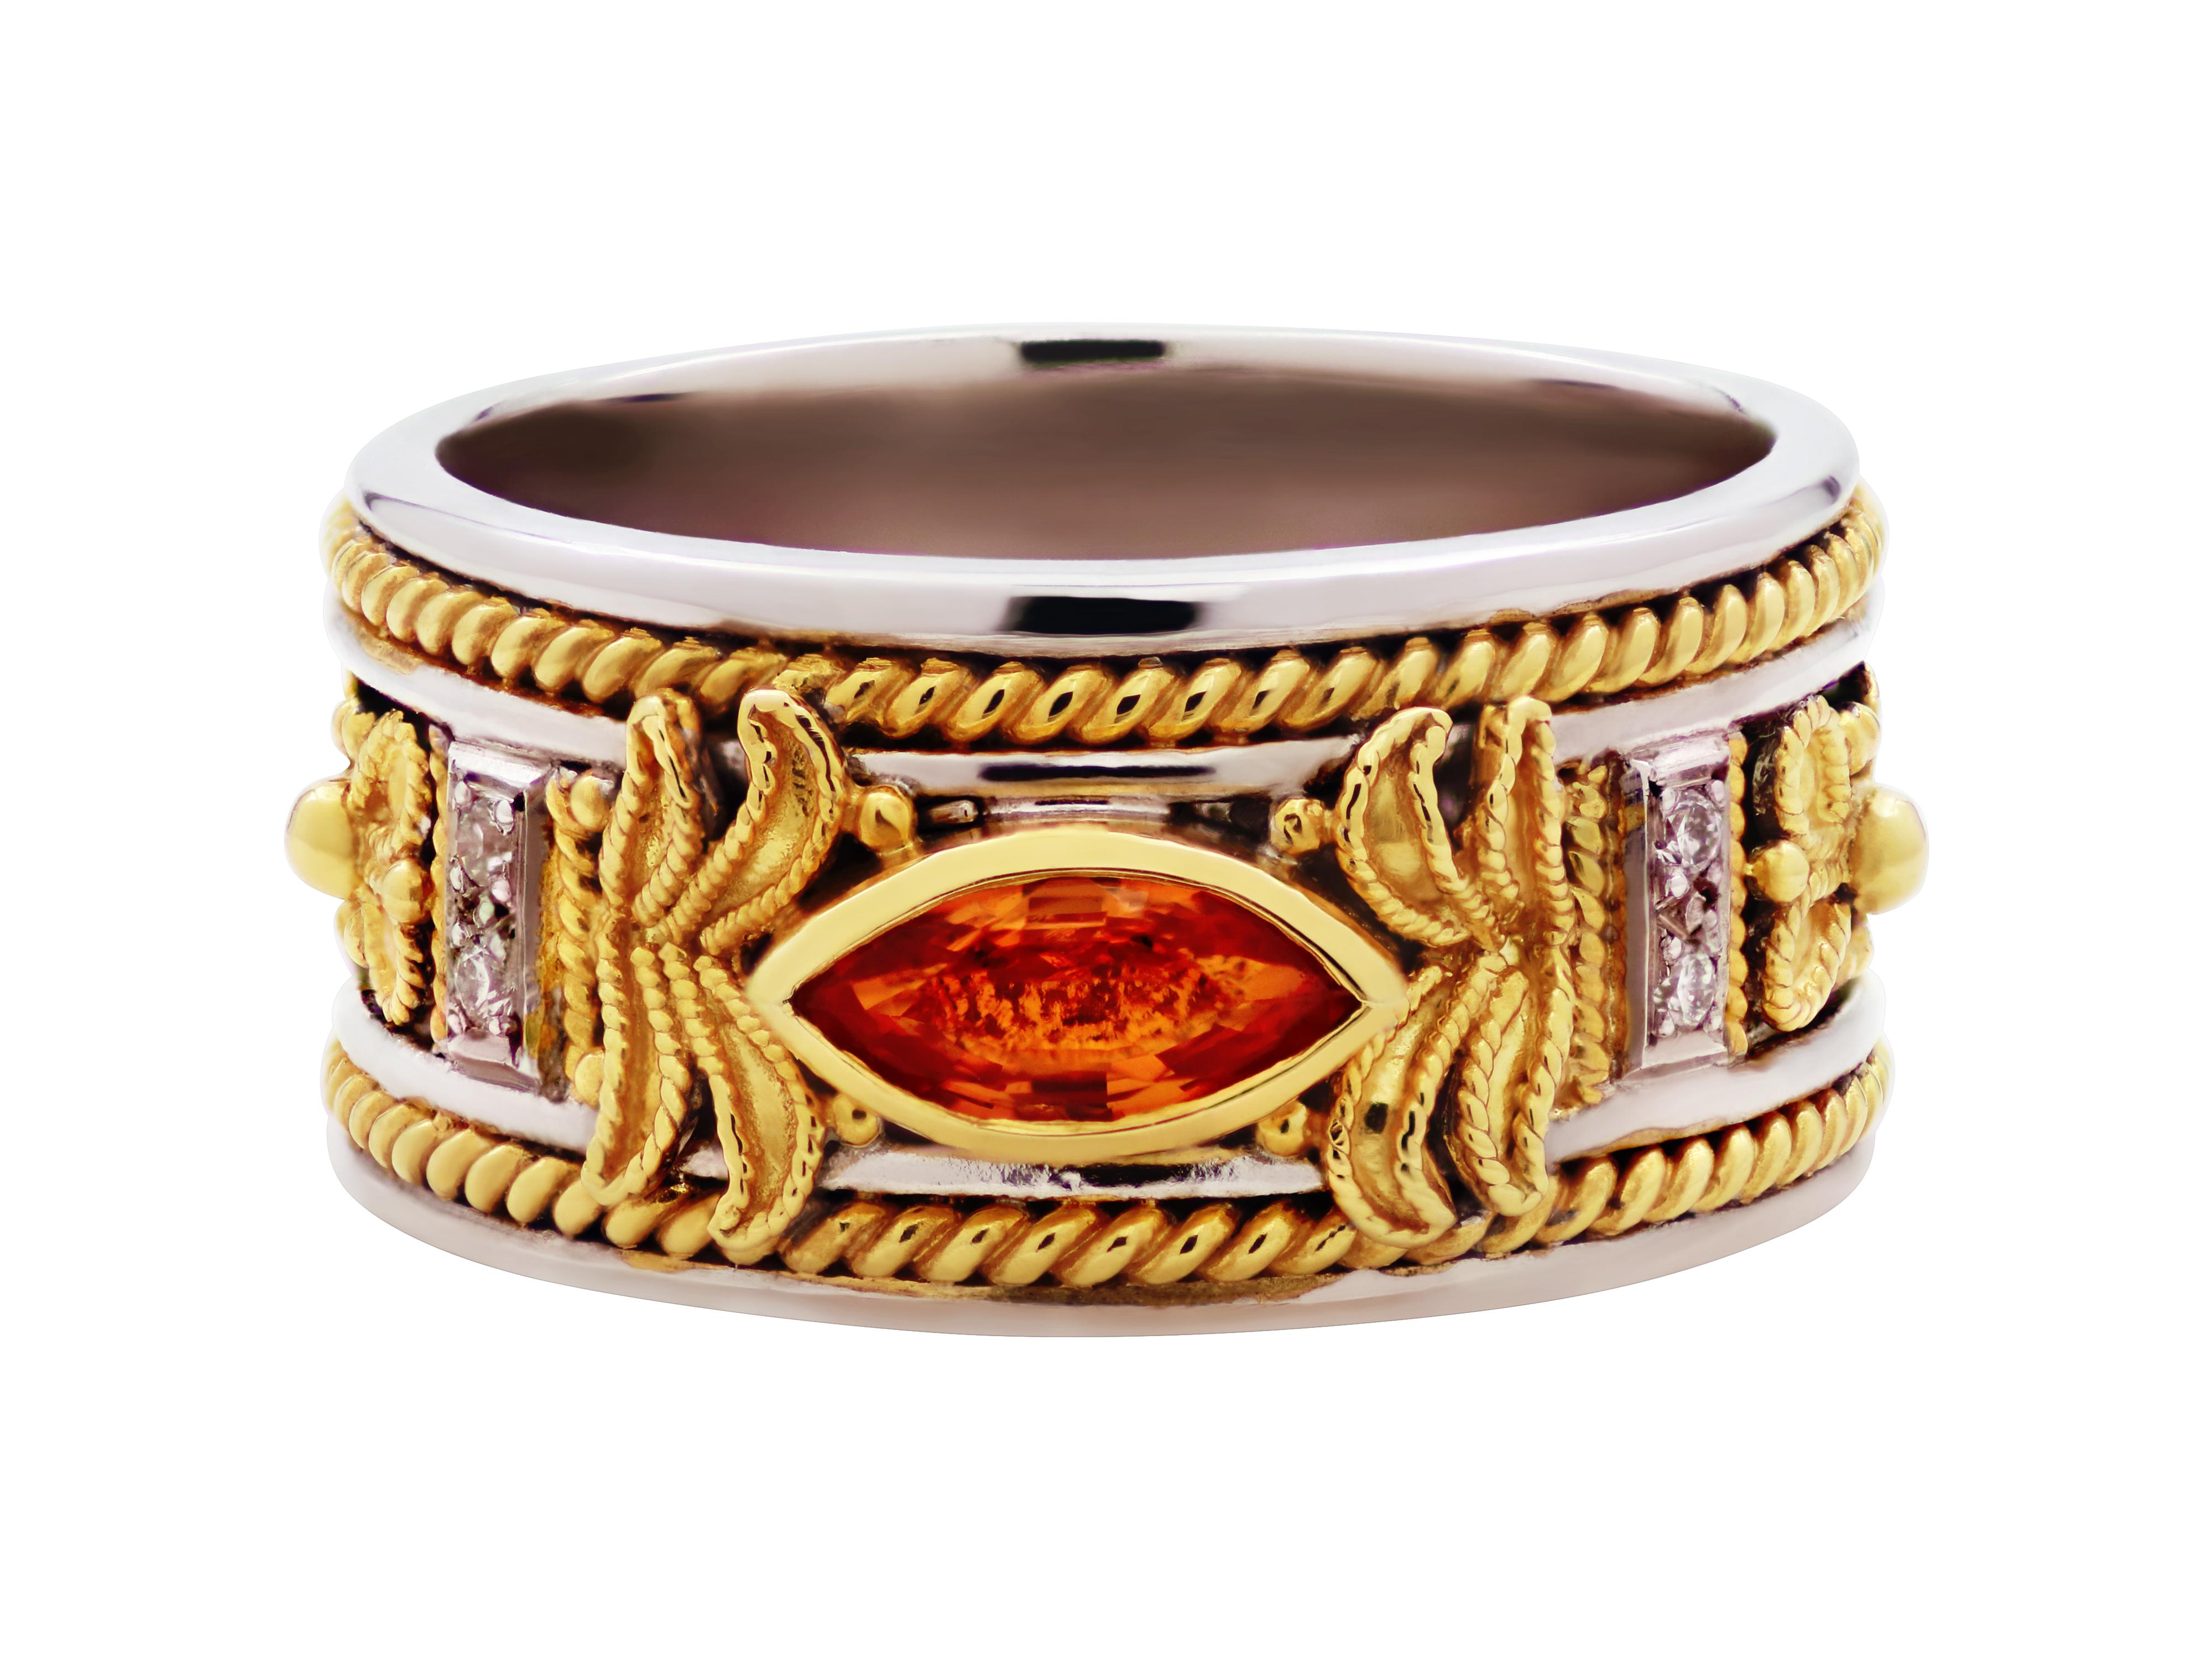 Byzantinischer Ring in einer schönen Kombination mit 18k Gold und 925 Silber. Gelber Topas und weiße Diamanten verleihen ihm viel Charakter in einer sehr alltäglichen Größe. Unsere berühmten handgefertigten Filigran- und Granulationsarbeiten